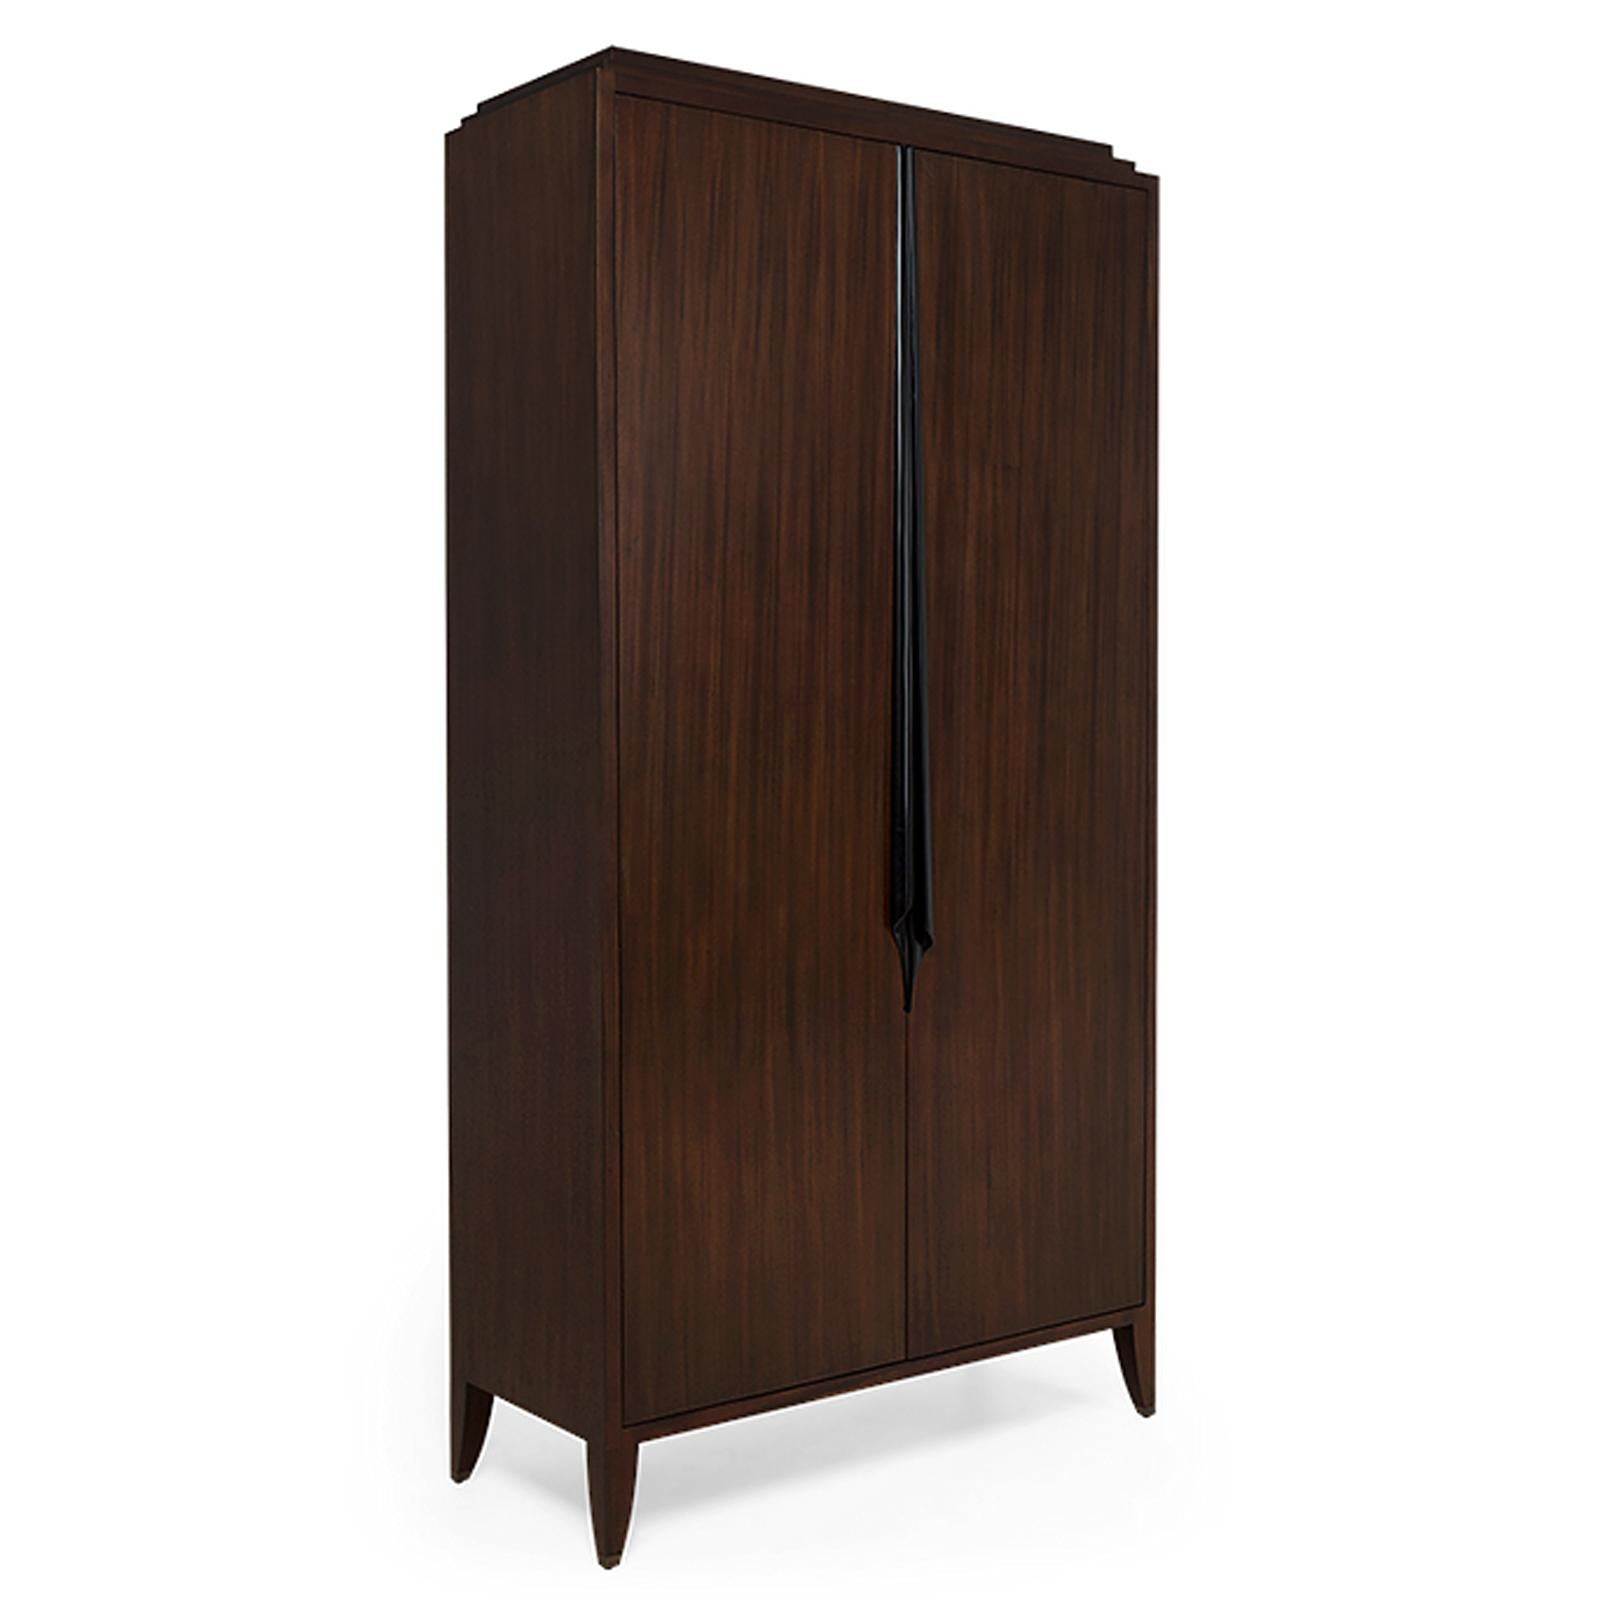 mahogany wood cabinets